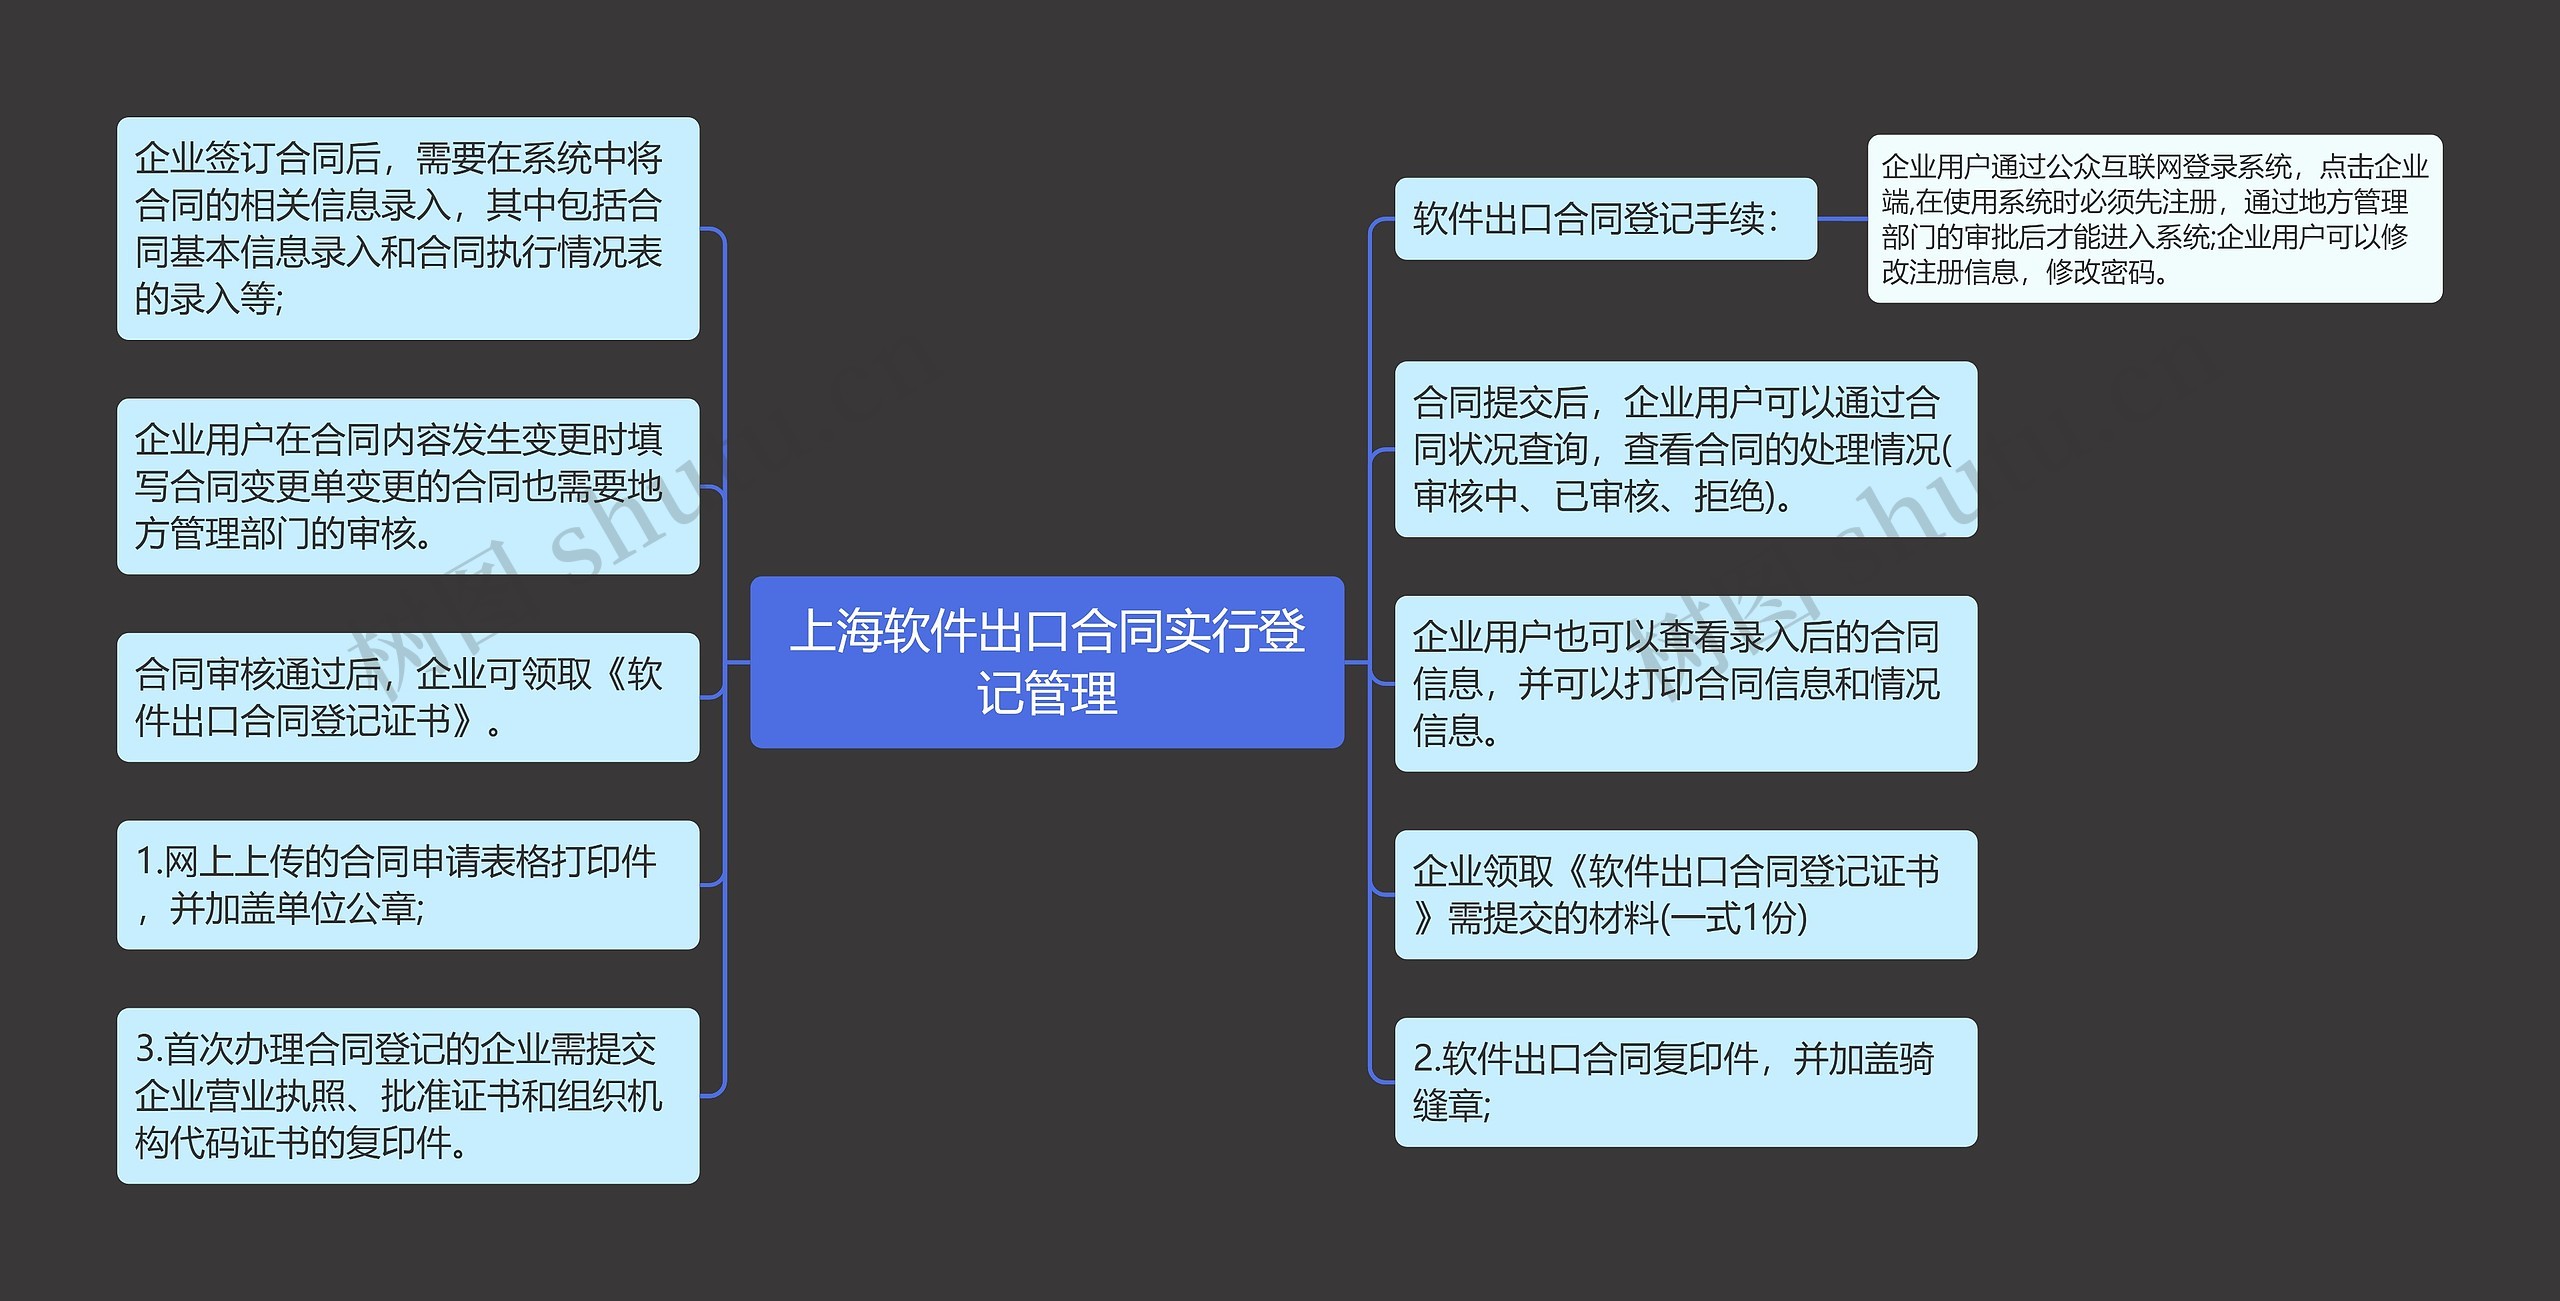 上海软件出口合同实行登记管理